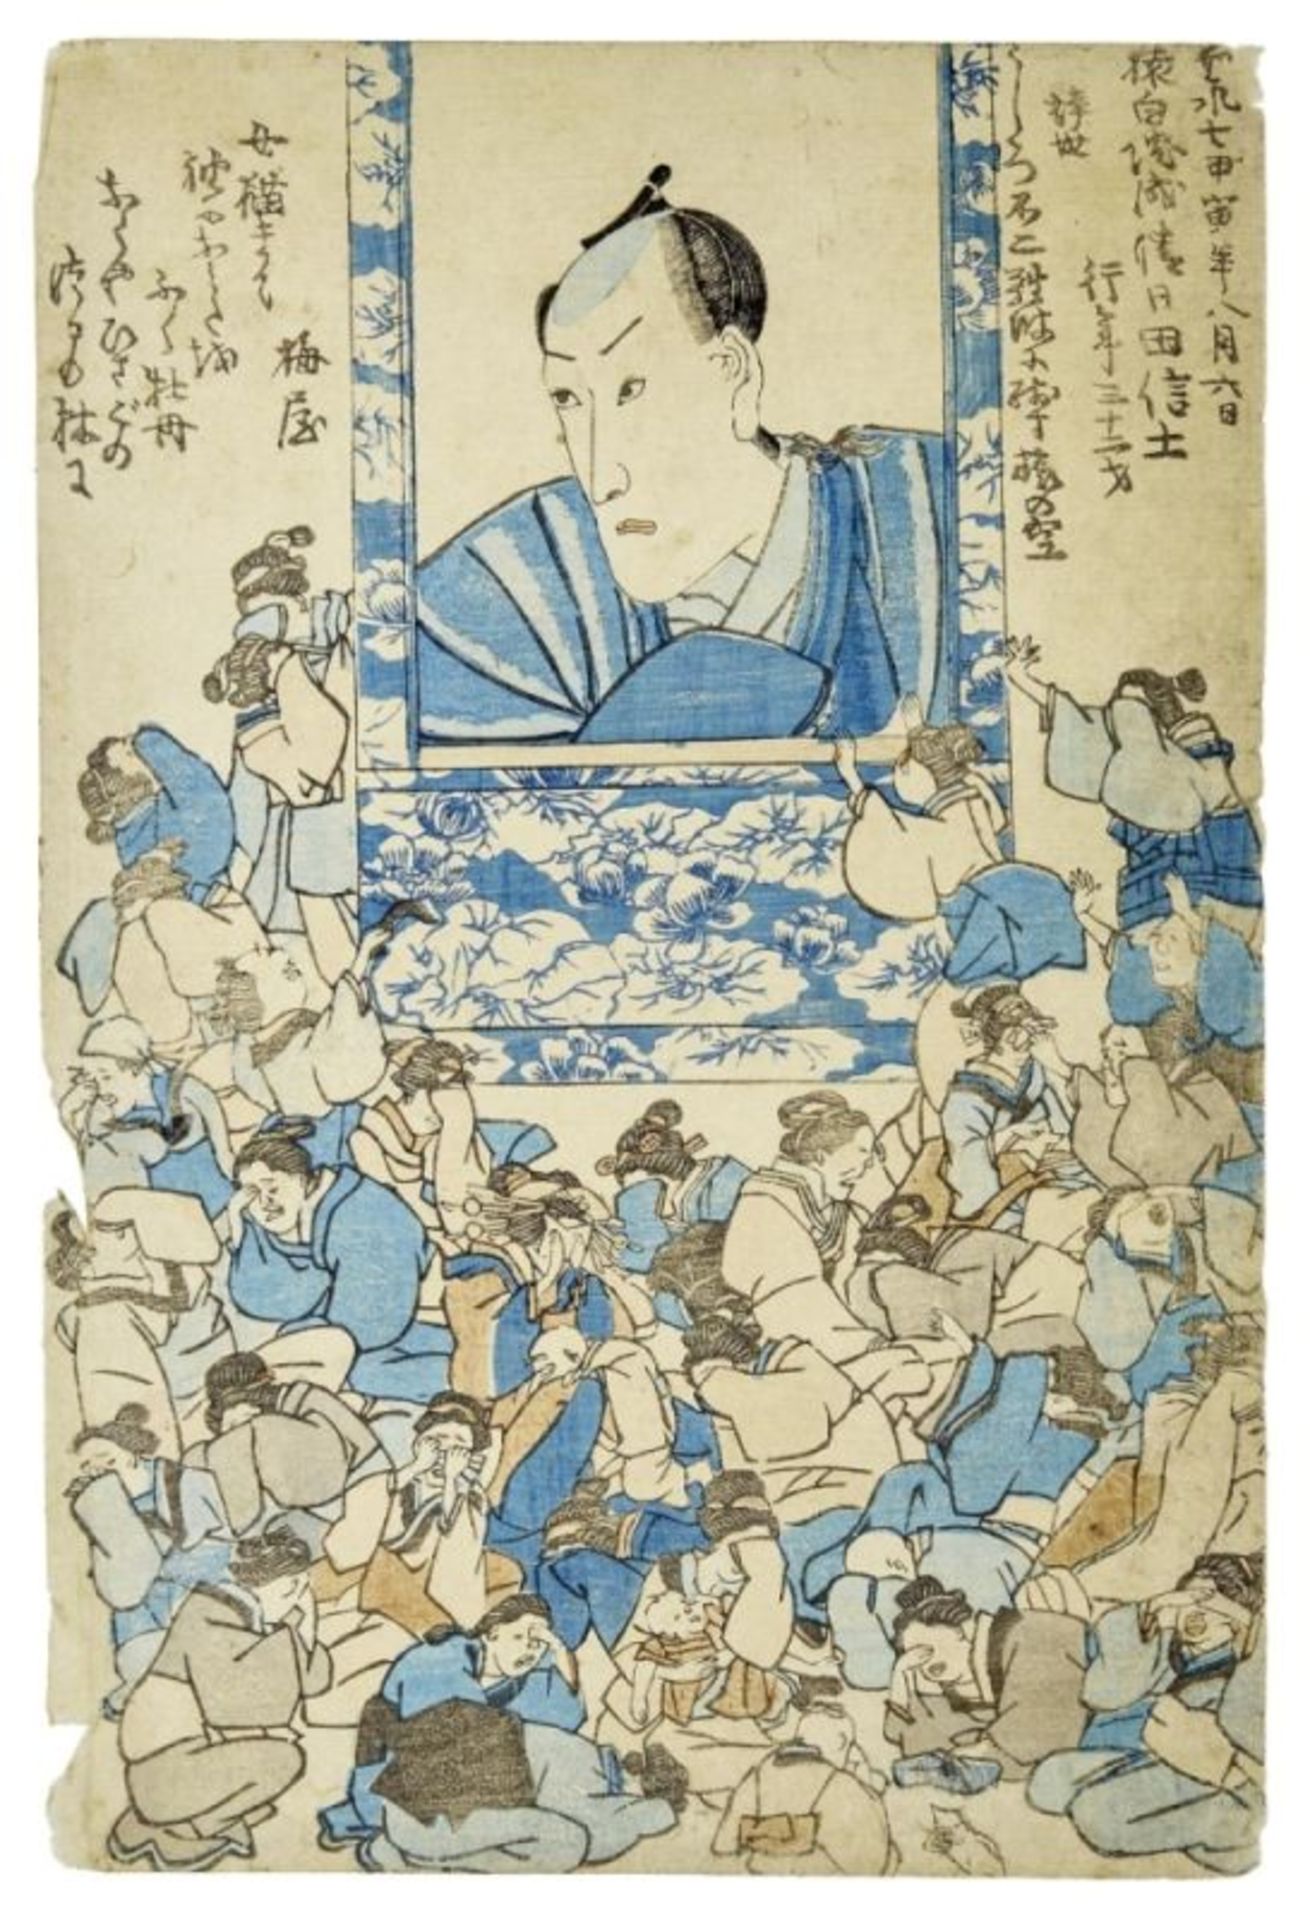 Gedenkblatt für den Schauspieler Ichikawa Danjuro VIII, Japan, Utagawa-Schule, 19. Jh.